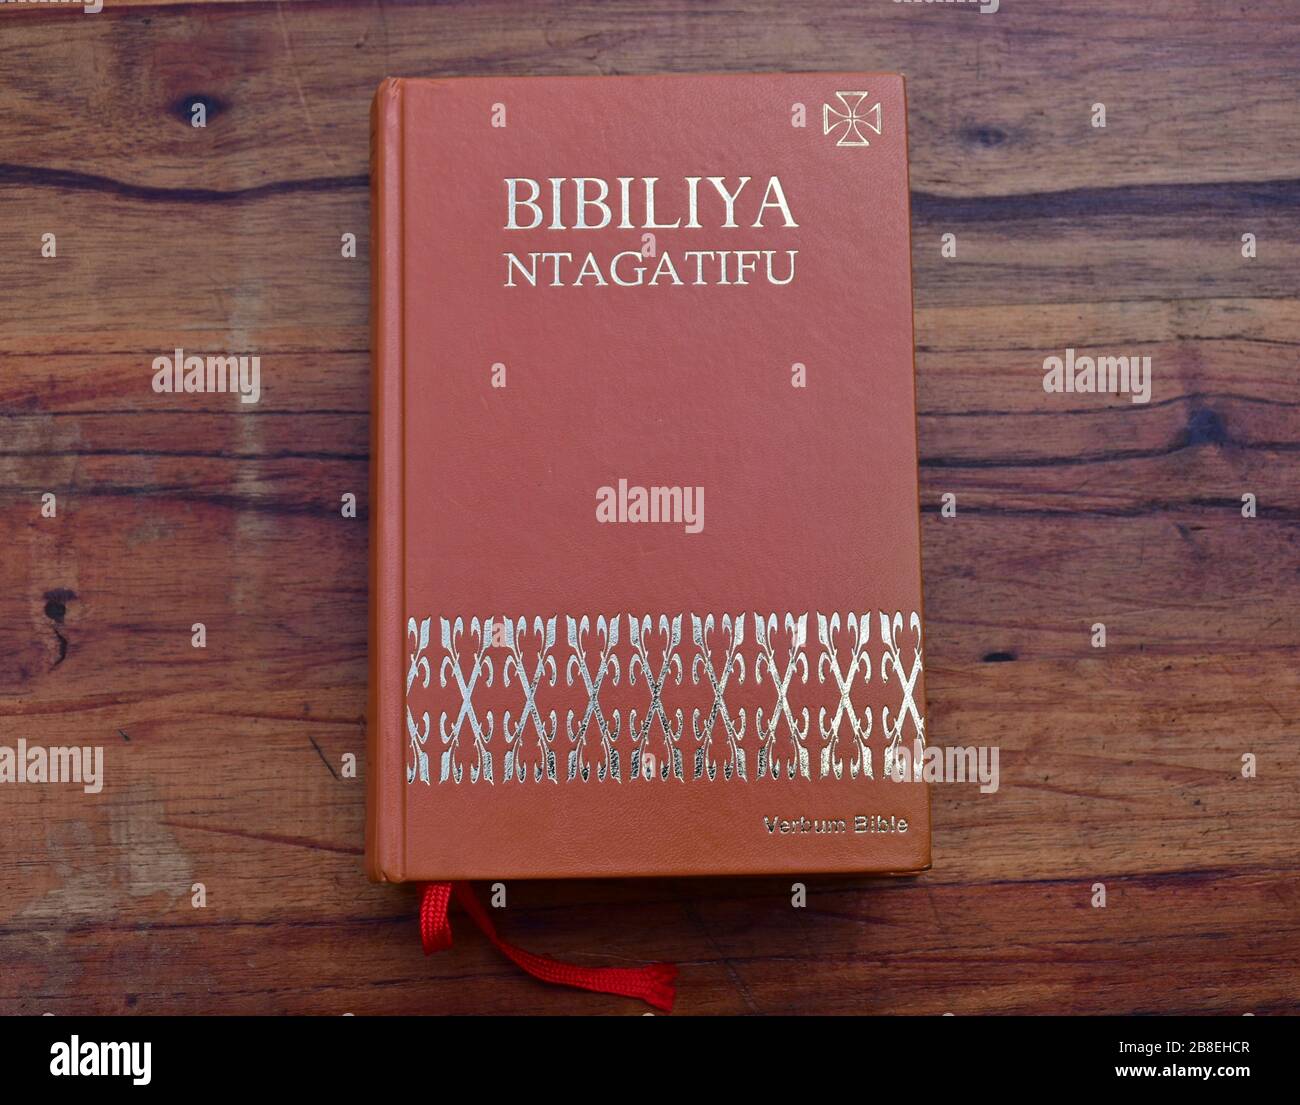 Kinyarwanda language Catholic Holy Bible on wooden table Stock Photo